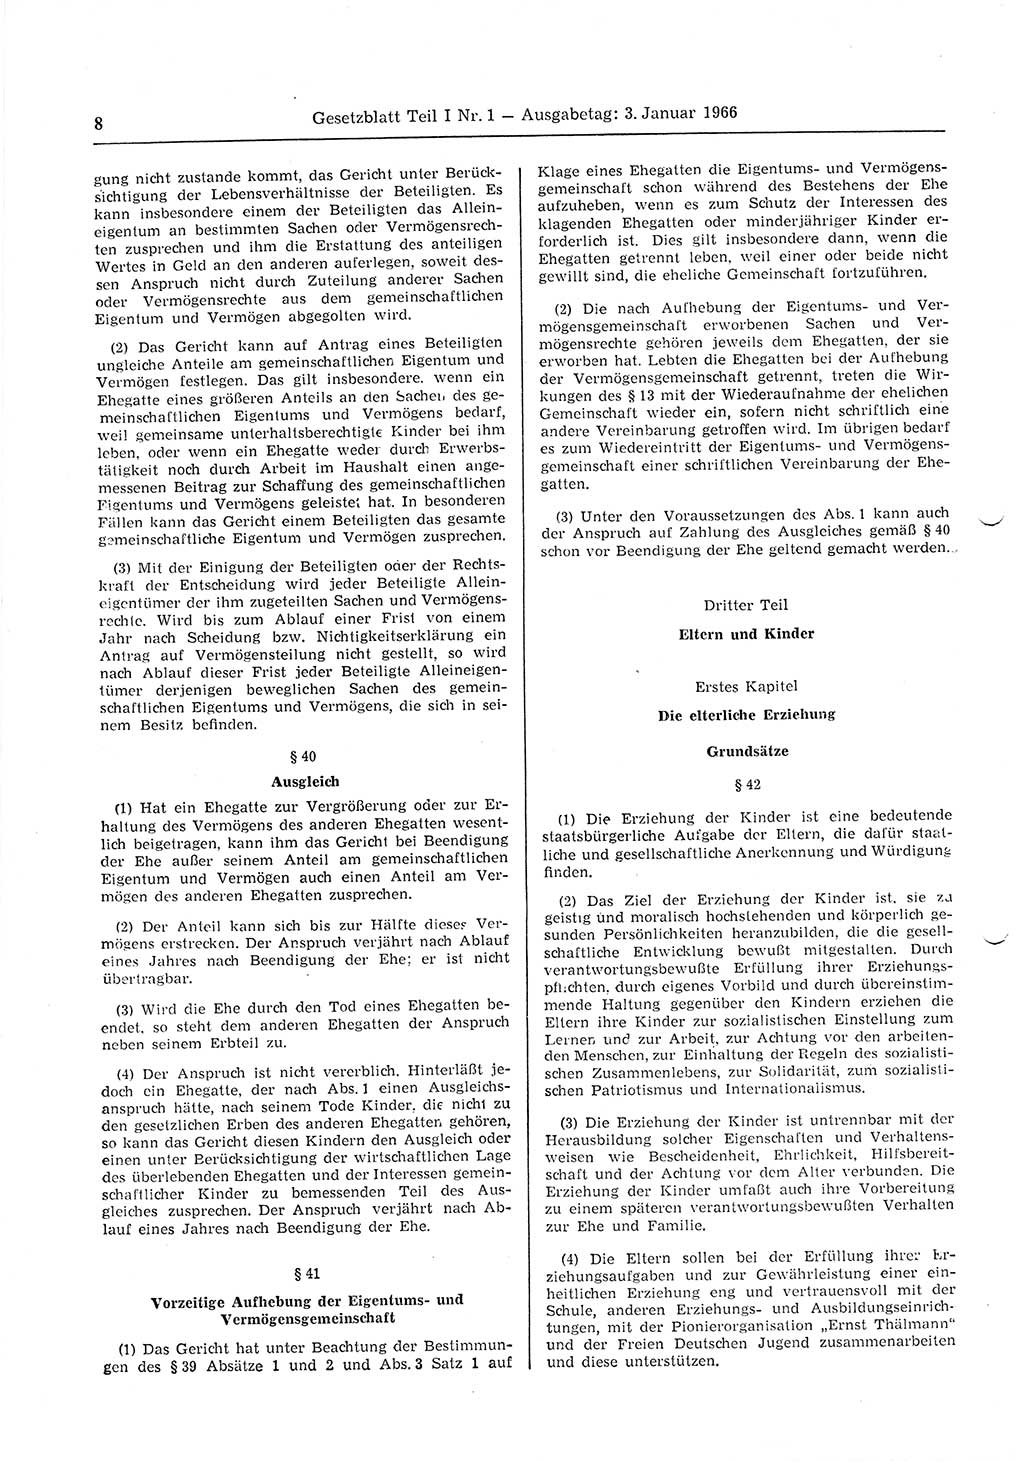 Gesetzblatt (GBl.) der Deutschen Demokratischen Republik (DDR) Teil Ⅰ 1966, Seite 8 (GBl. DDR Ⅰ 1966, S. 8)